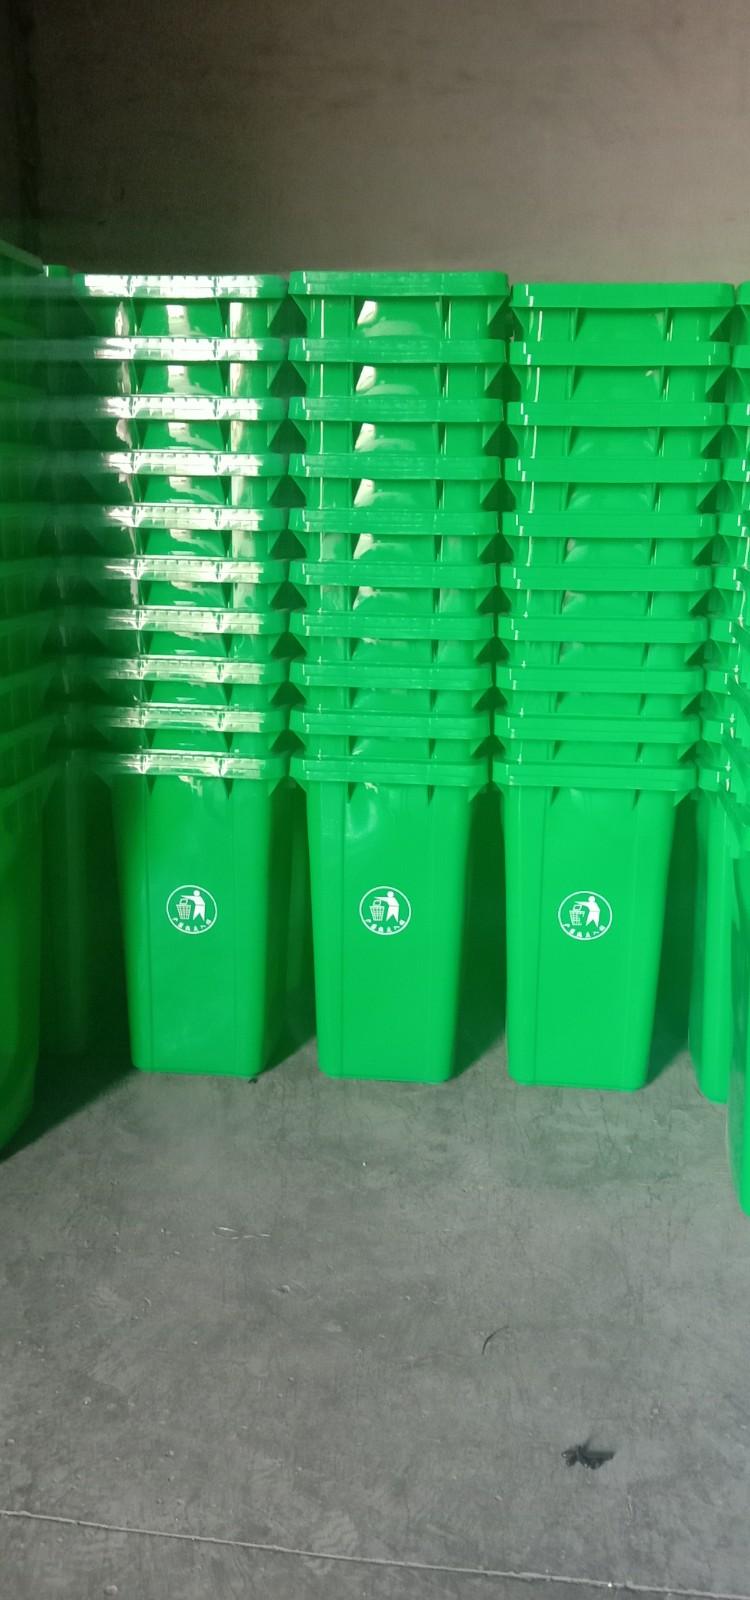 户外100升塑料垃圾桶 四色分类红绿蓝灰垃圾桶